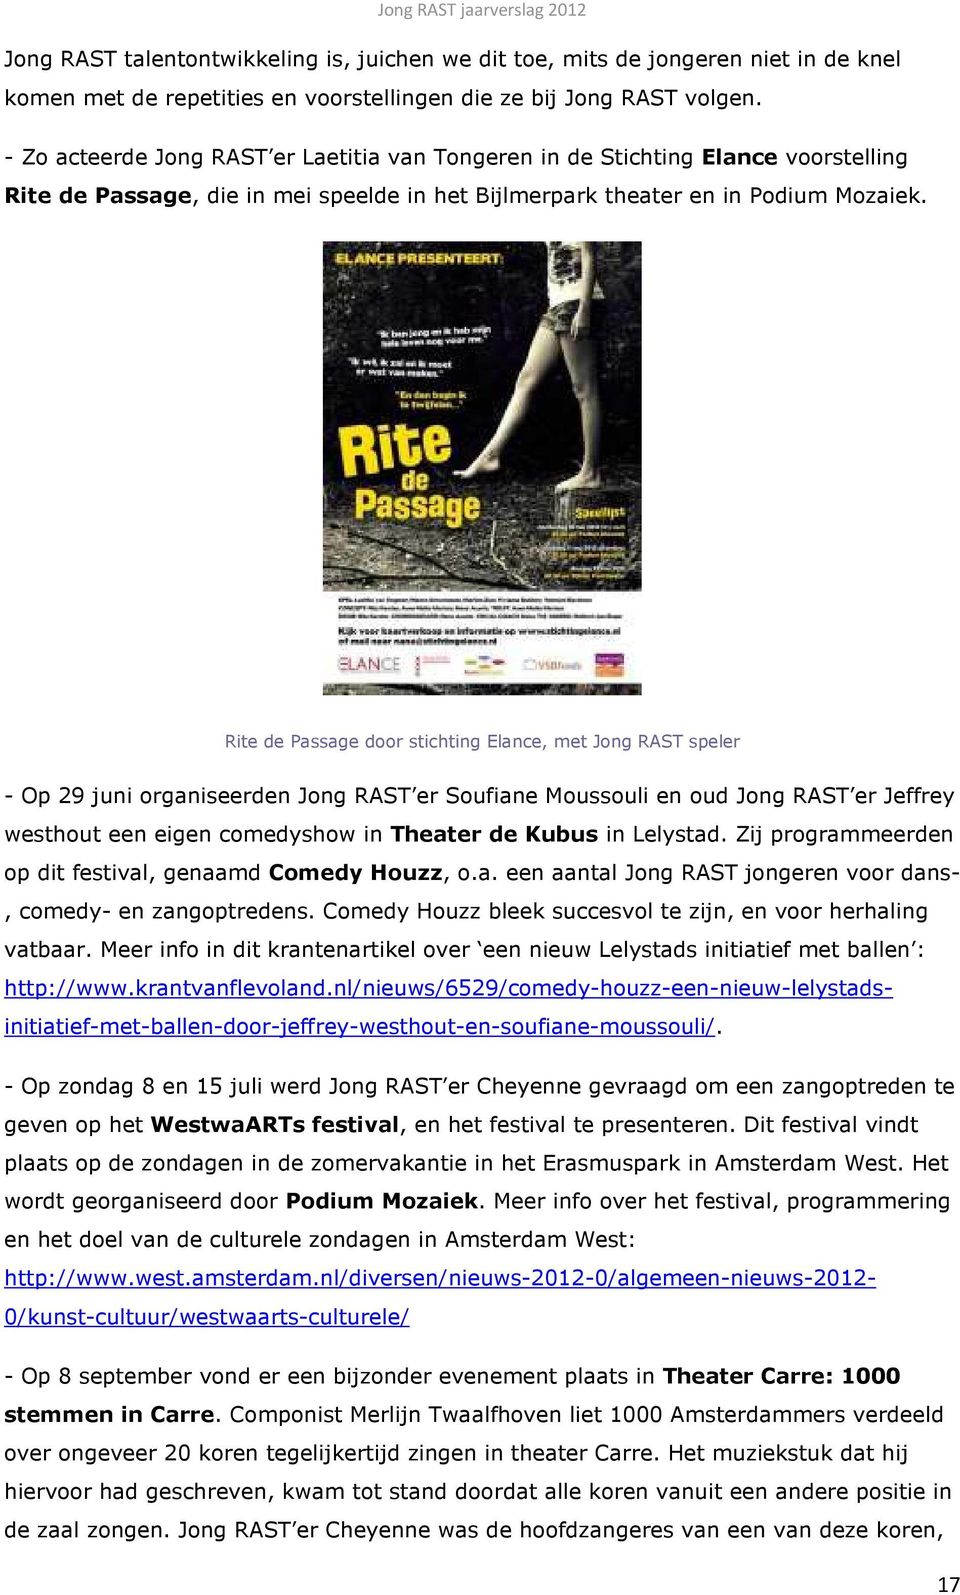 Rite de Passage door stichting Elance, met Jong RAST speler - Op 29 juni organiseerden Jong RAST er Soufiane Moussouli en oud Jong RAST er Jeffrey westhout een eigen comedyshow in Theater de Kubus in